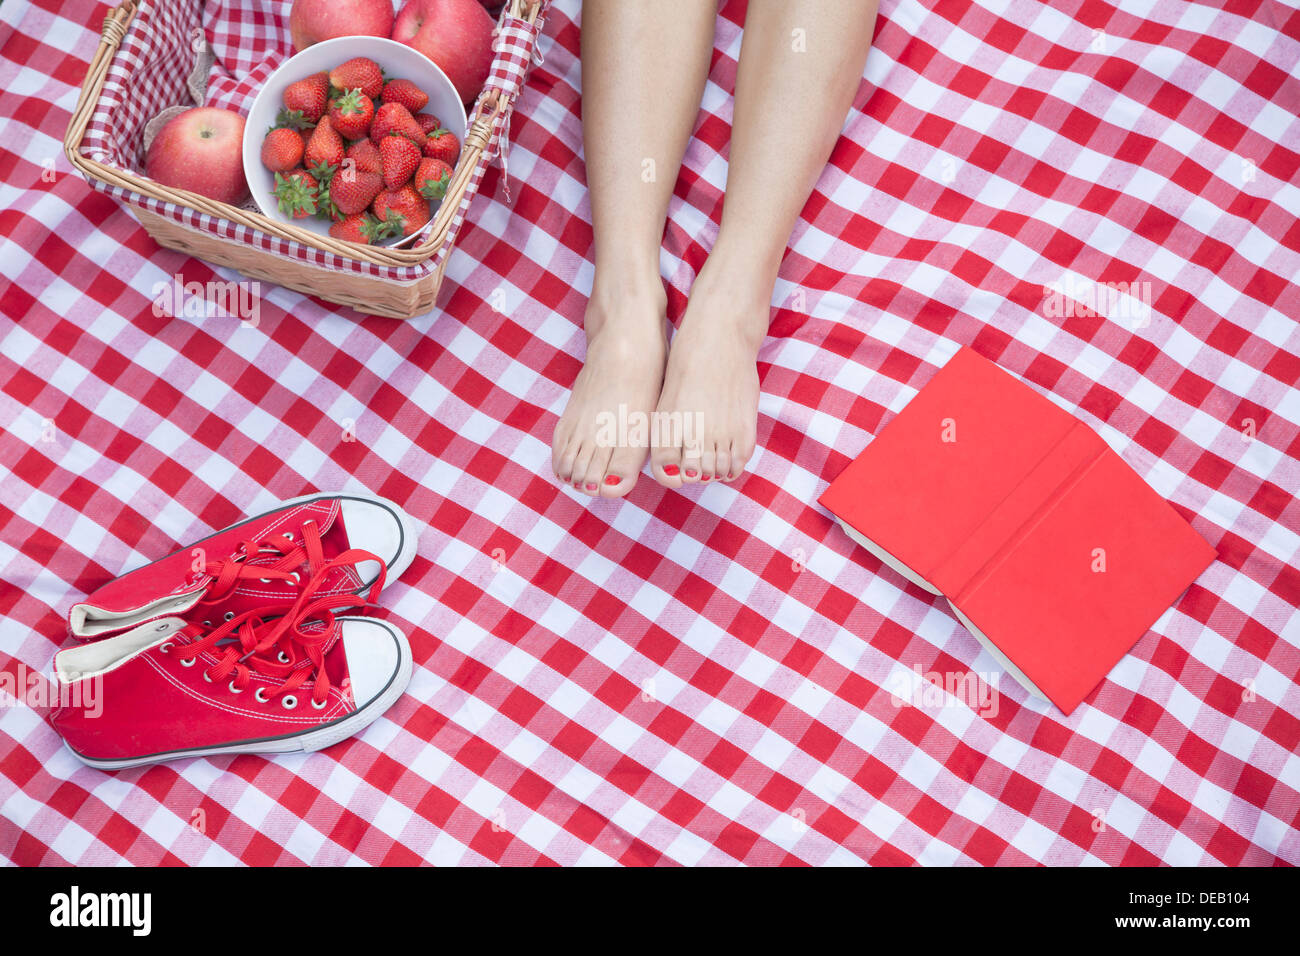 Junge Frau die Füße auf einer karierten Decke mit einem Picknick-Korb, Schuhe und ein Buch Stockfoto